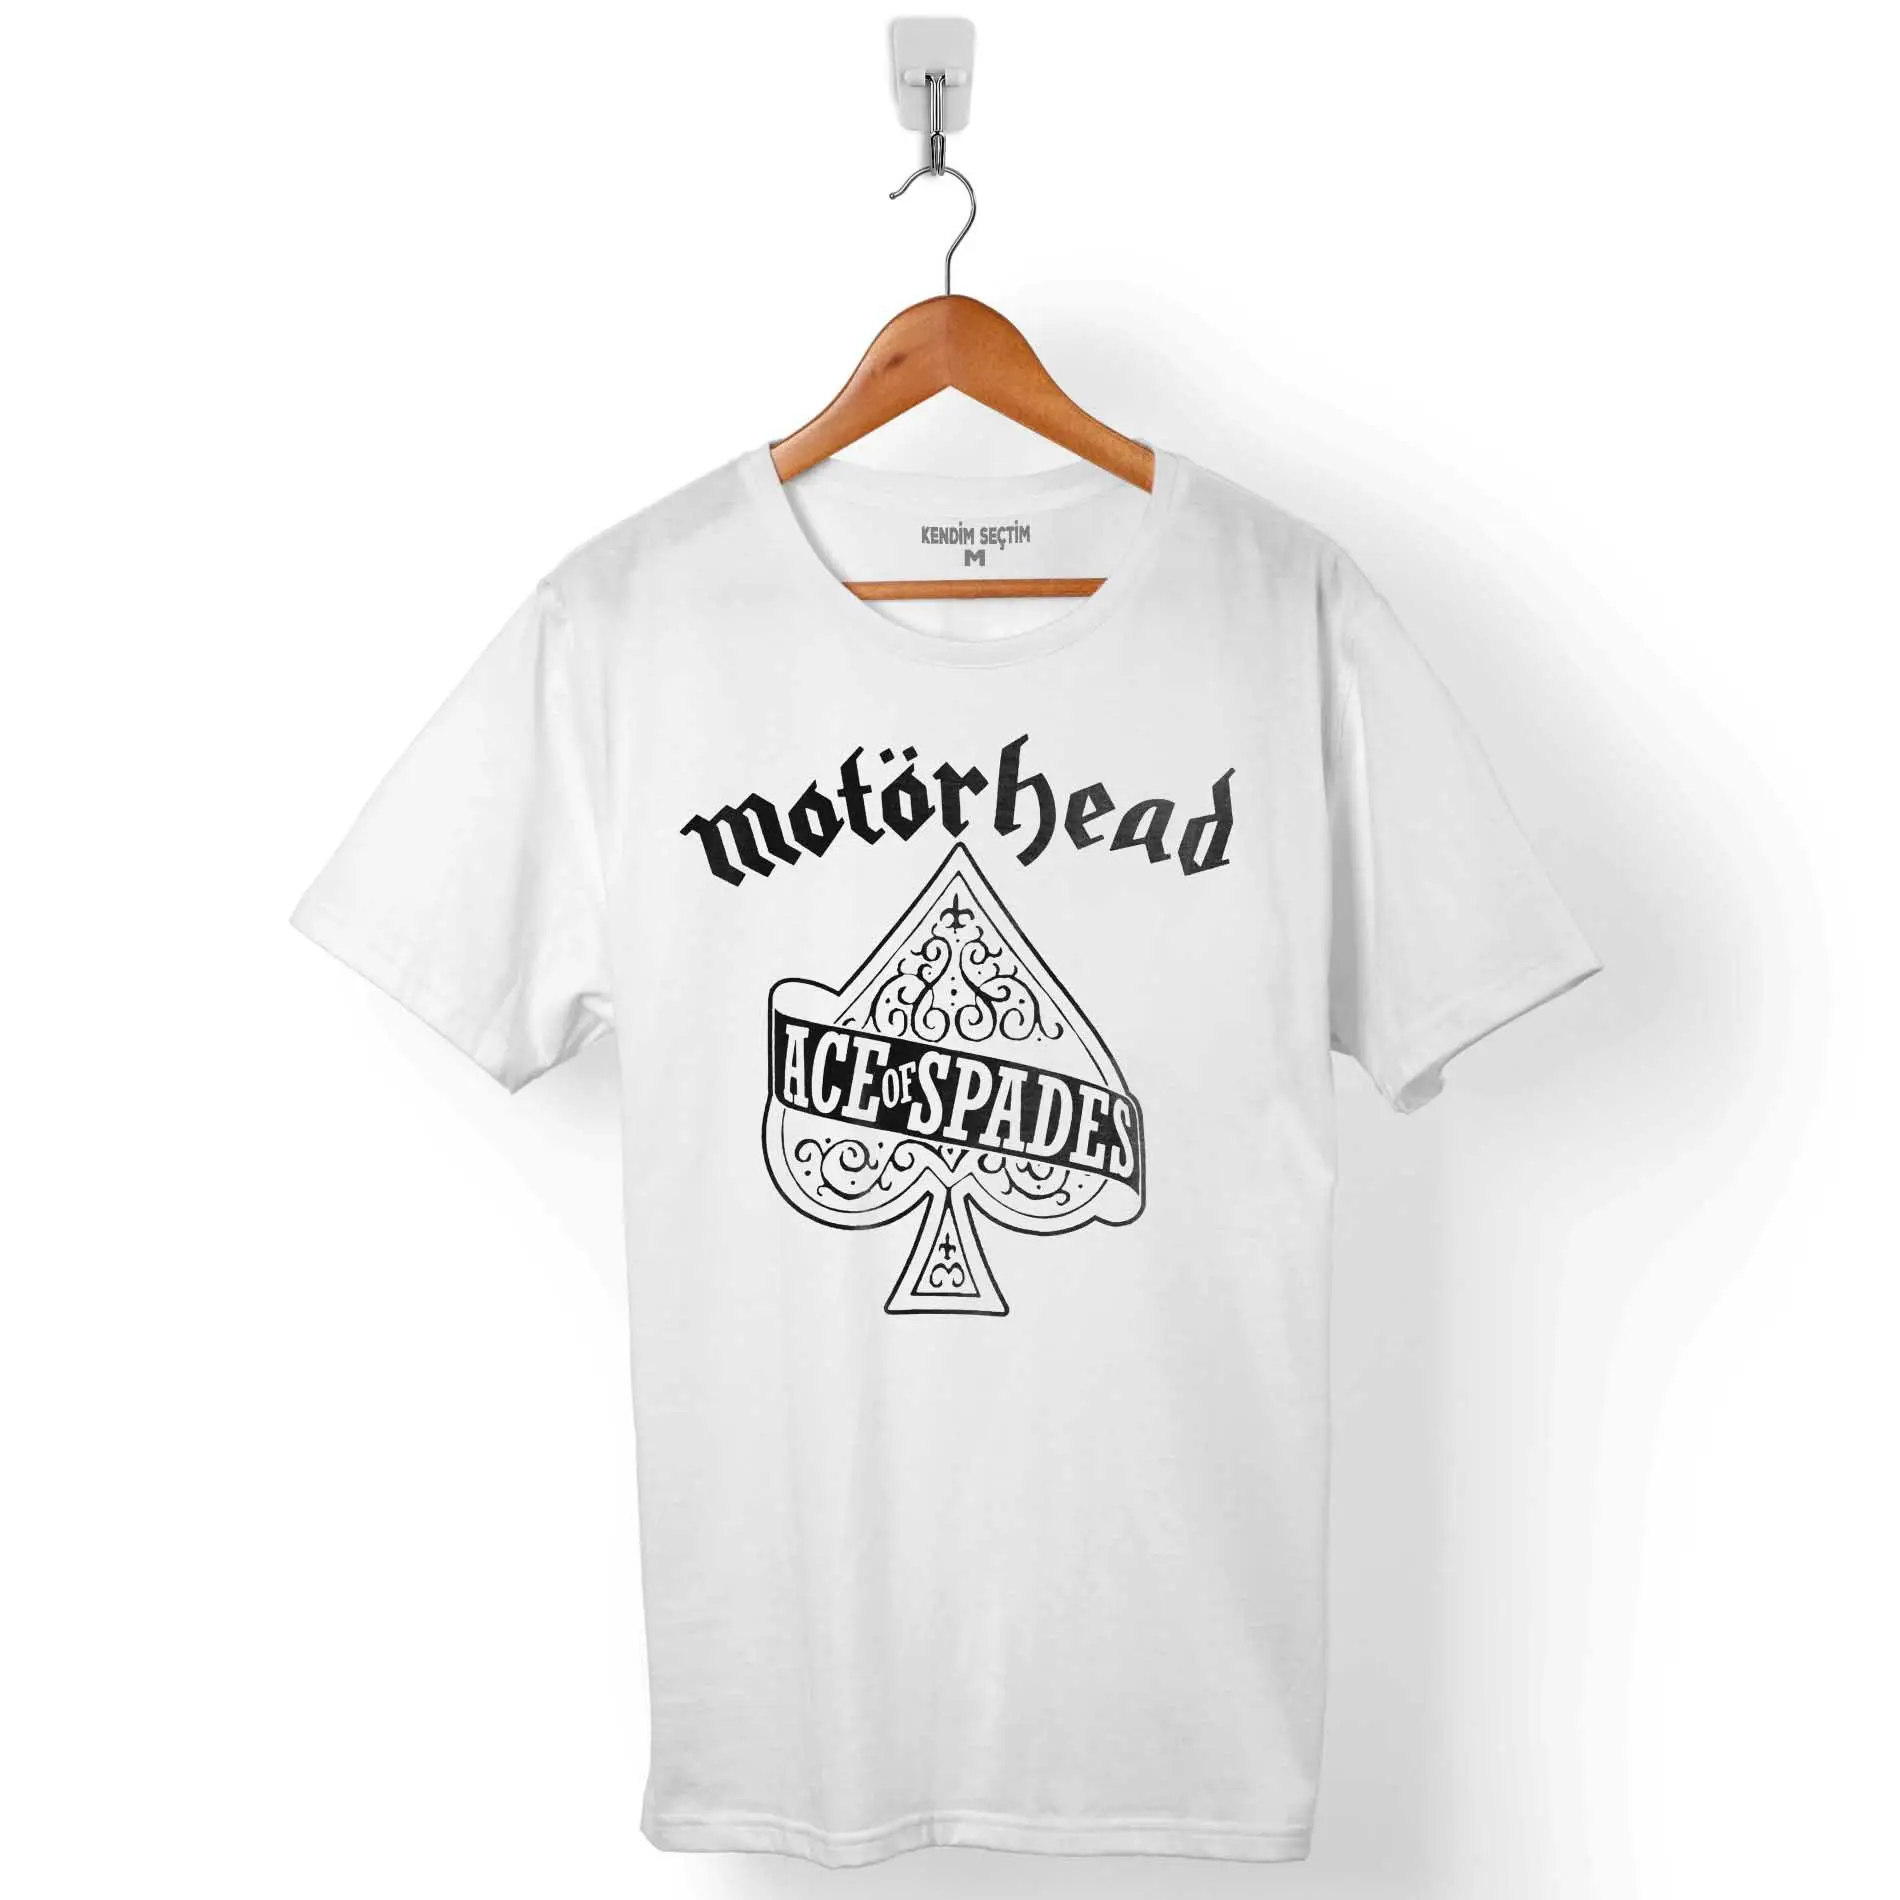 Motorhead Rock müzik Lemmy yüksek kaliteli özel grafik baskılı erkekler T shirt % 100% pamuk toptan